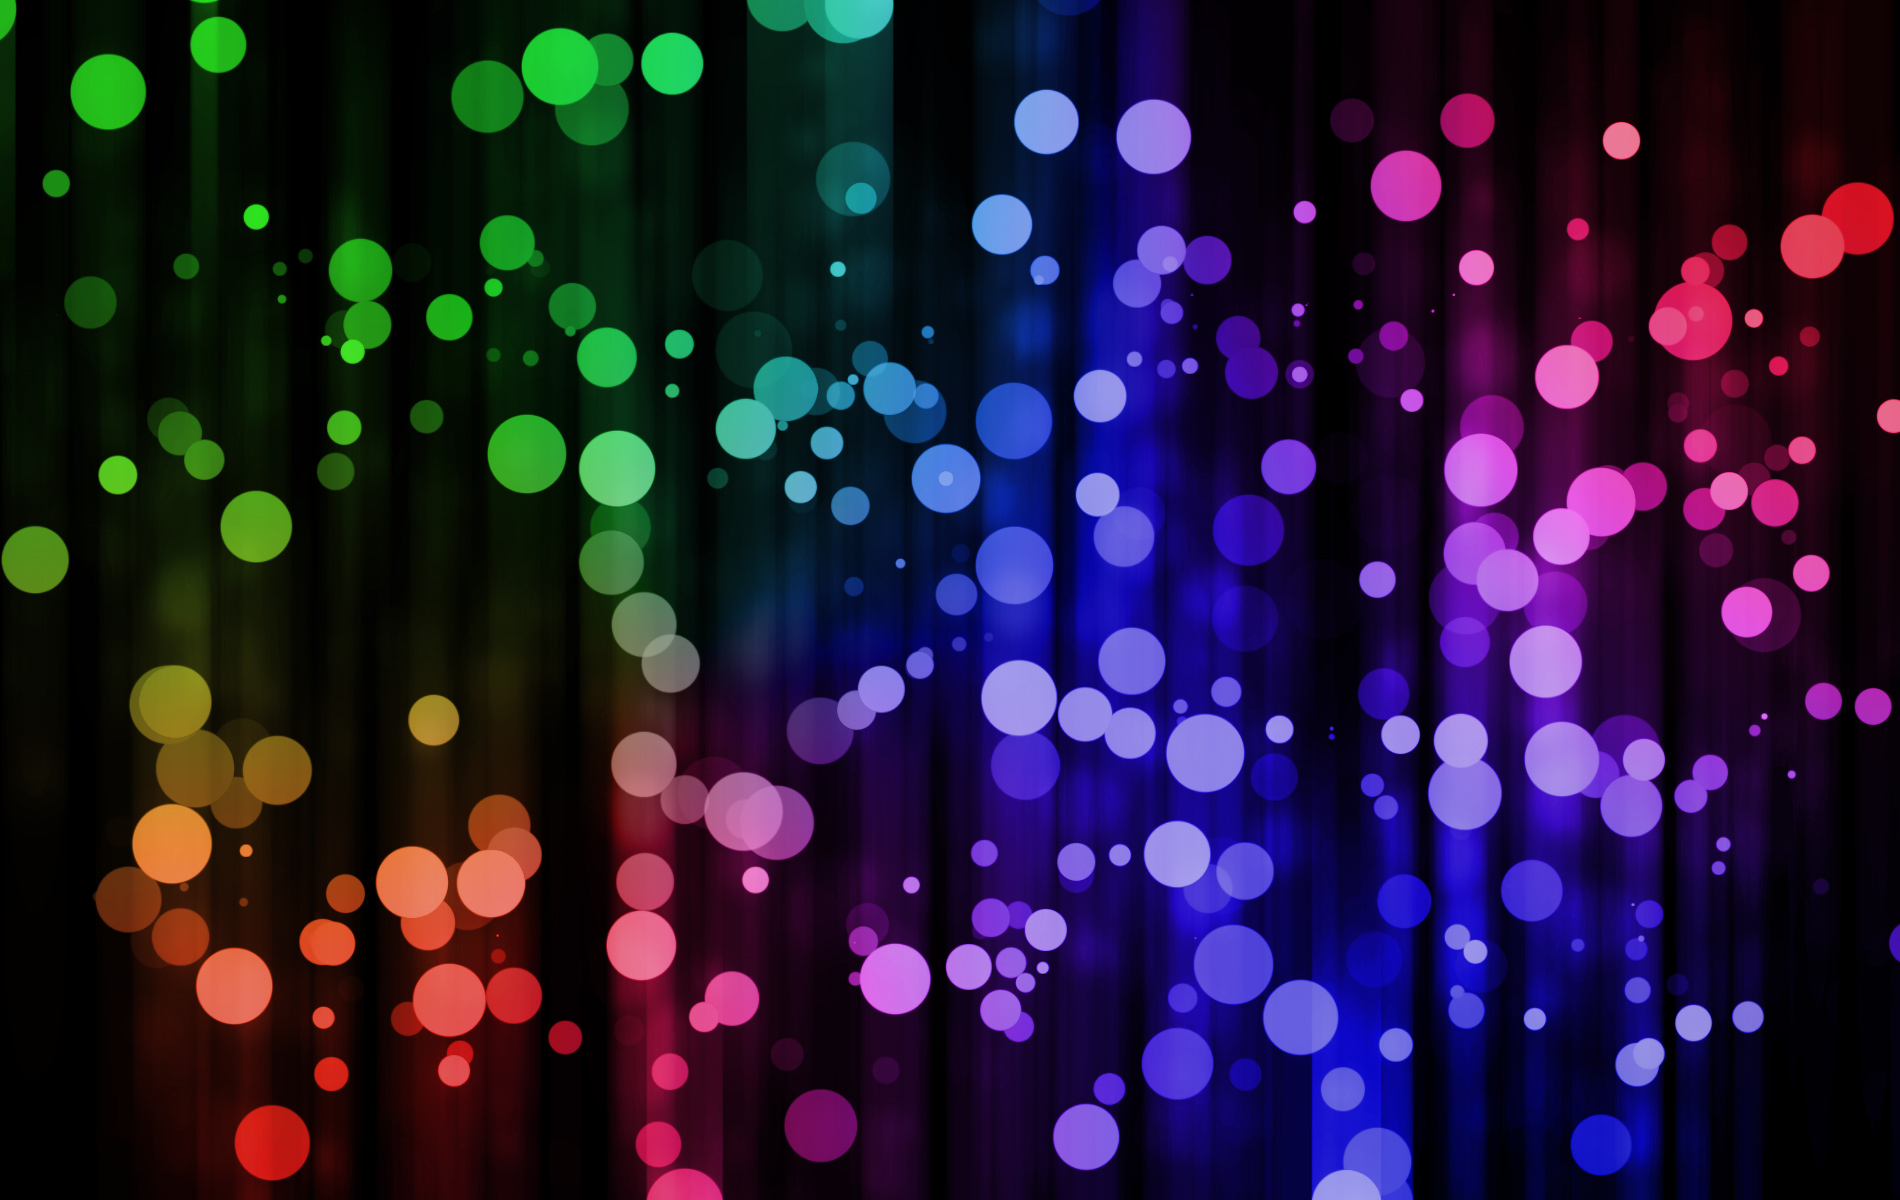 Download Wallpaper Colors Lights RoyaltyFree Stock Illustration Image   Pixabay